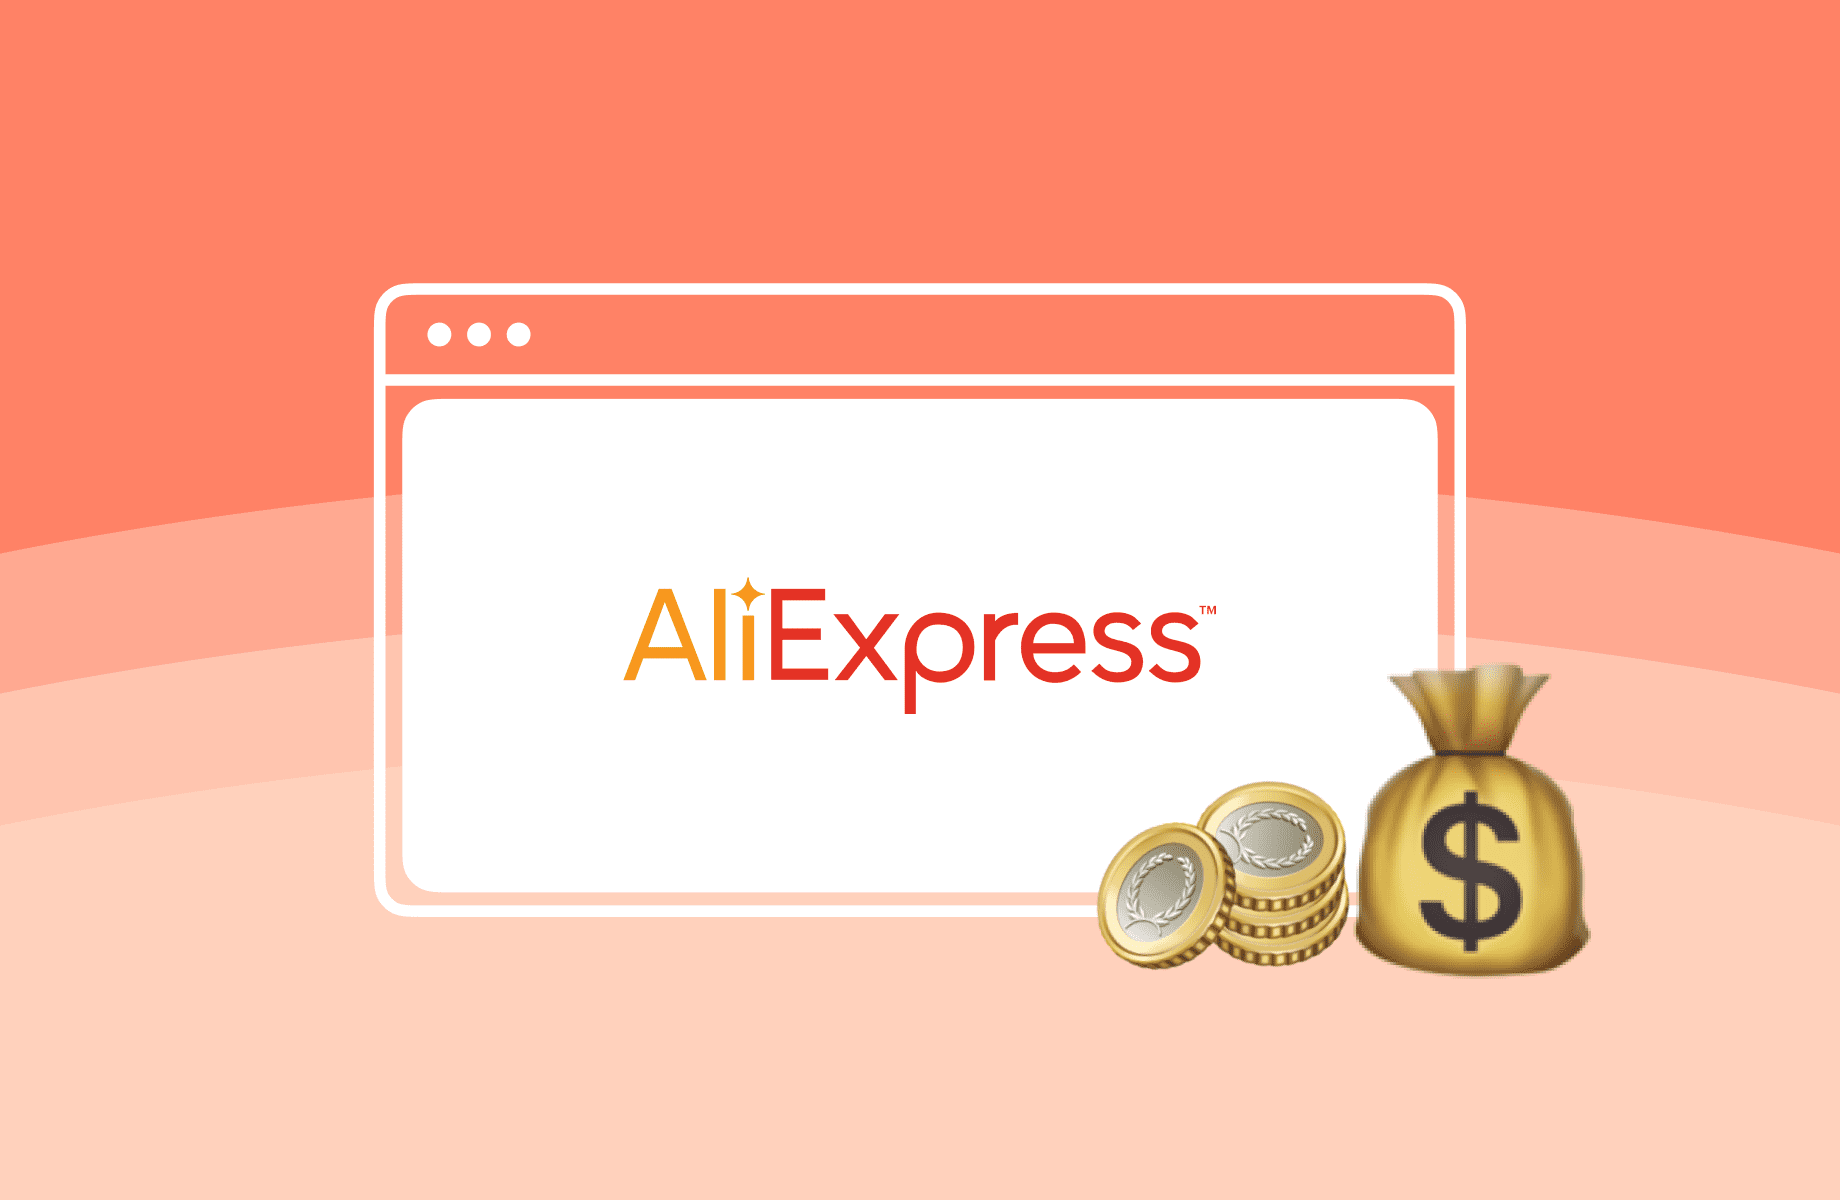 Cartão AliExpress - Conheça as vantagens e mais